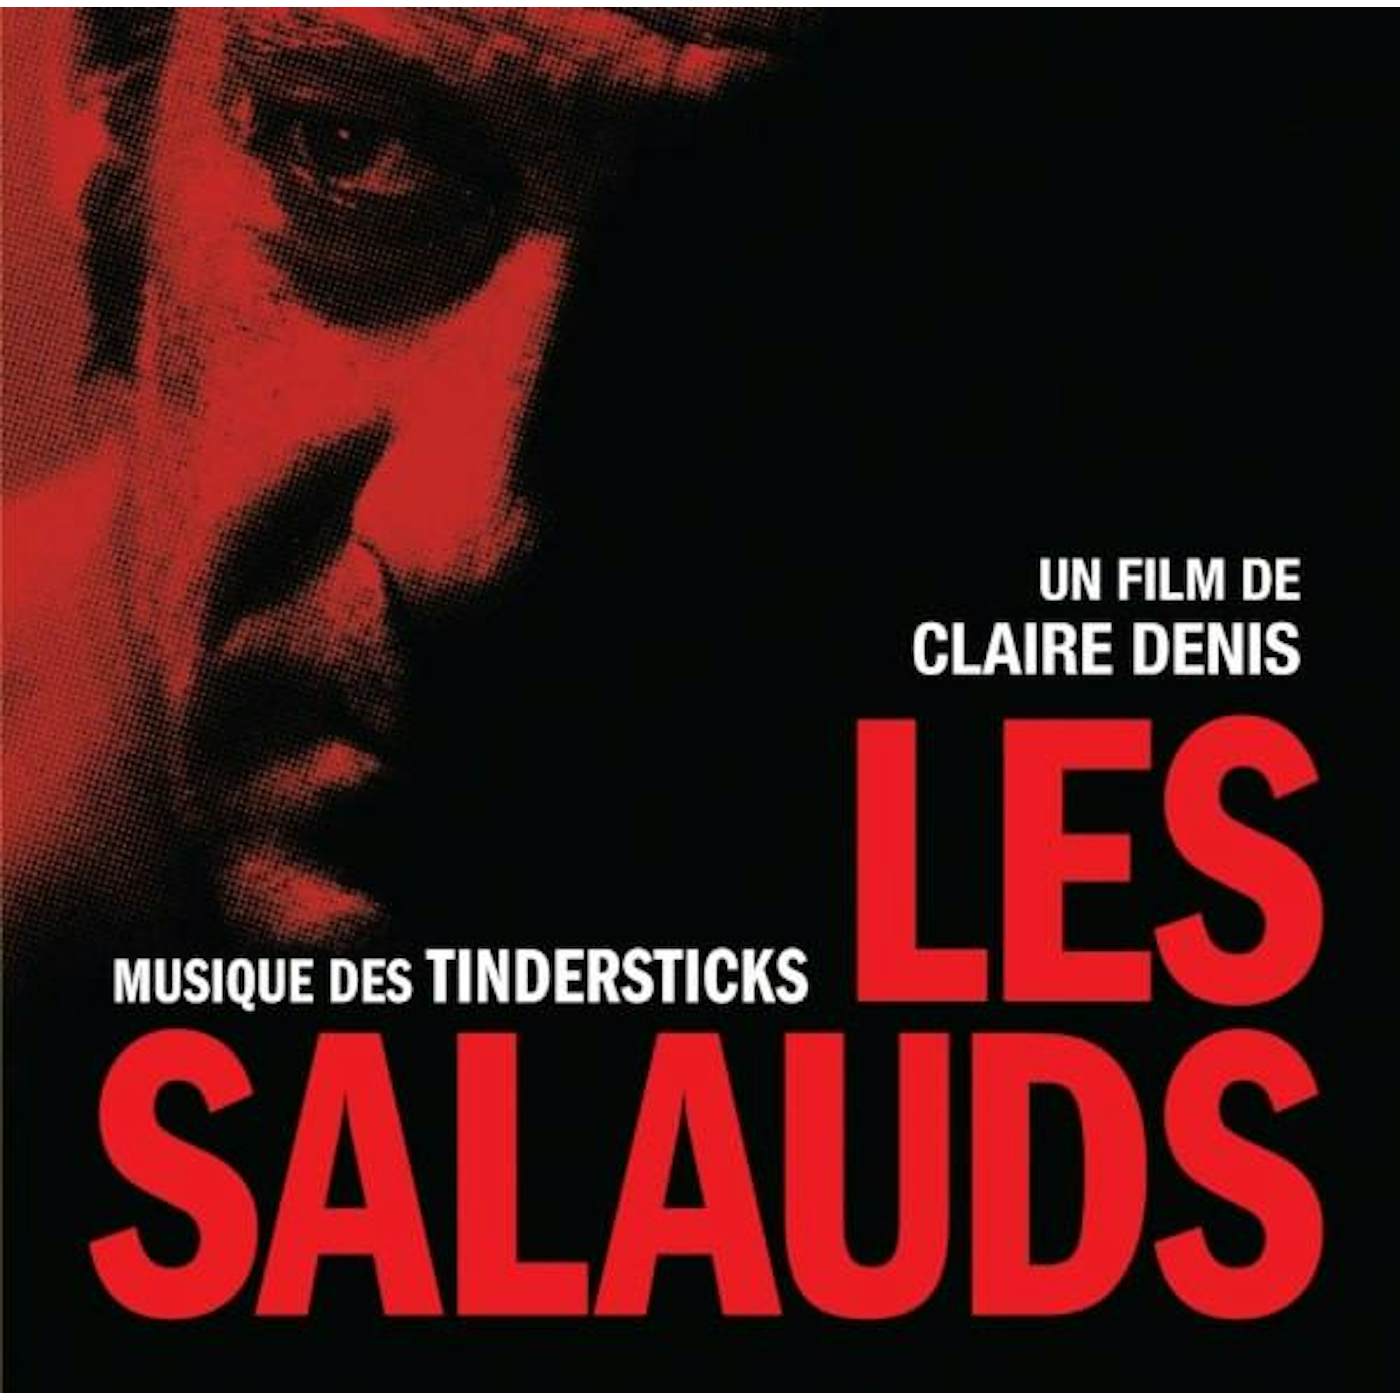 Tindersticks LES SALAUDS (UN FILM DE CLAIRE DENIS) Vinyl Record